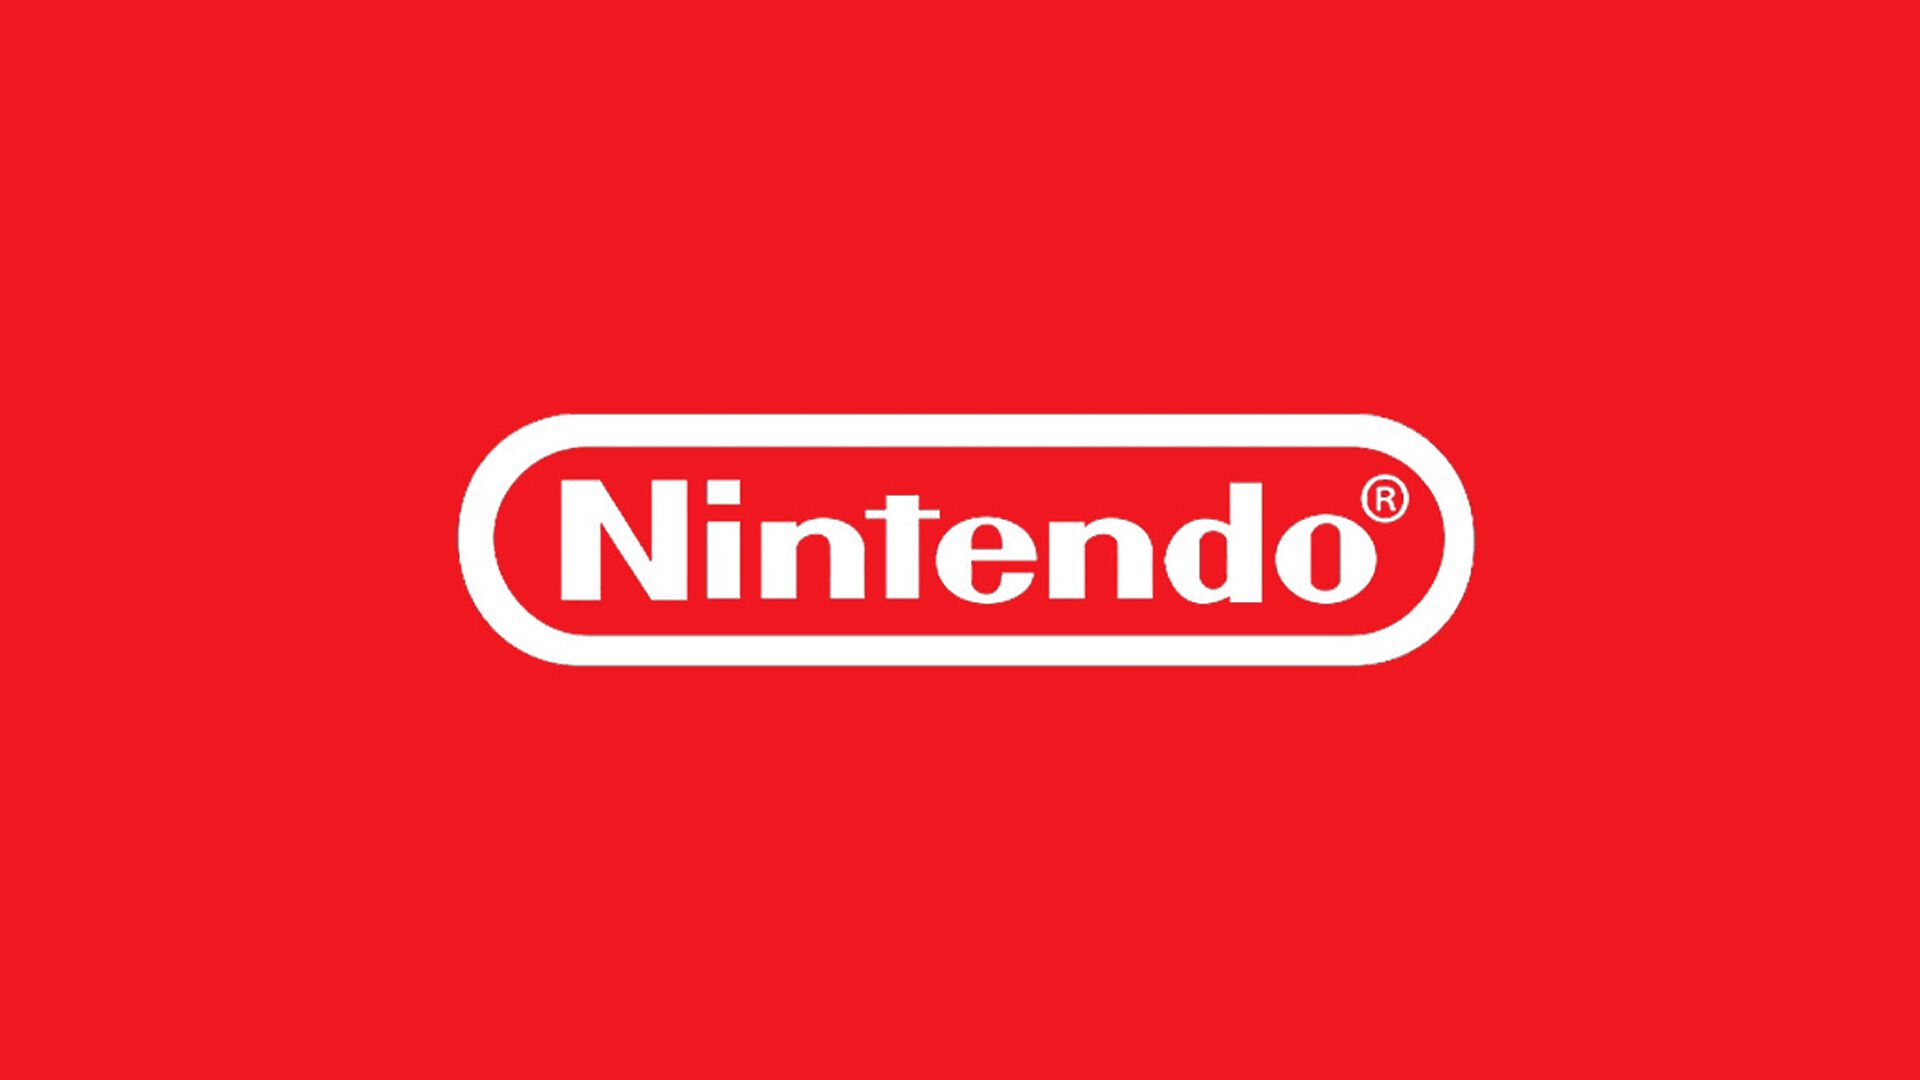 任天堂、Switch後継機種を今期中に発表予定と公表。また6月のニンダイでは扱わないことも合わせて発表